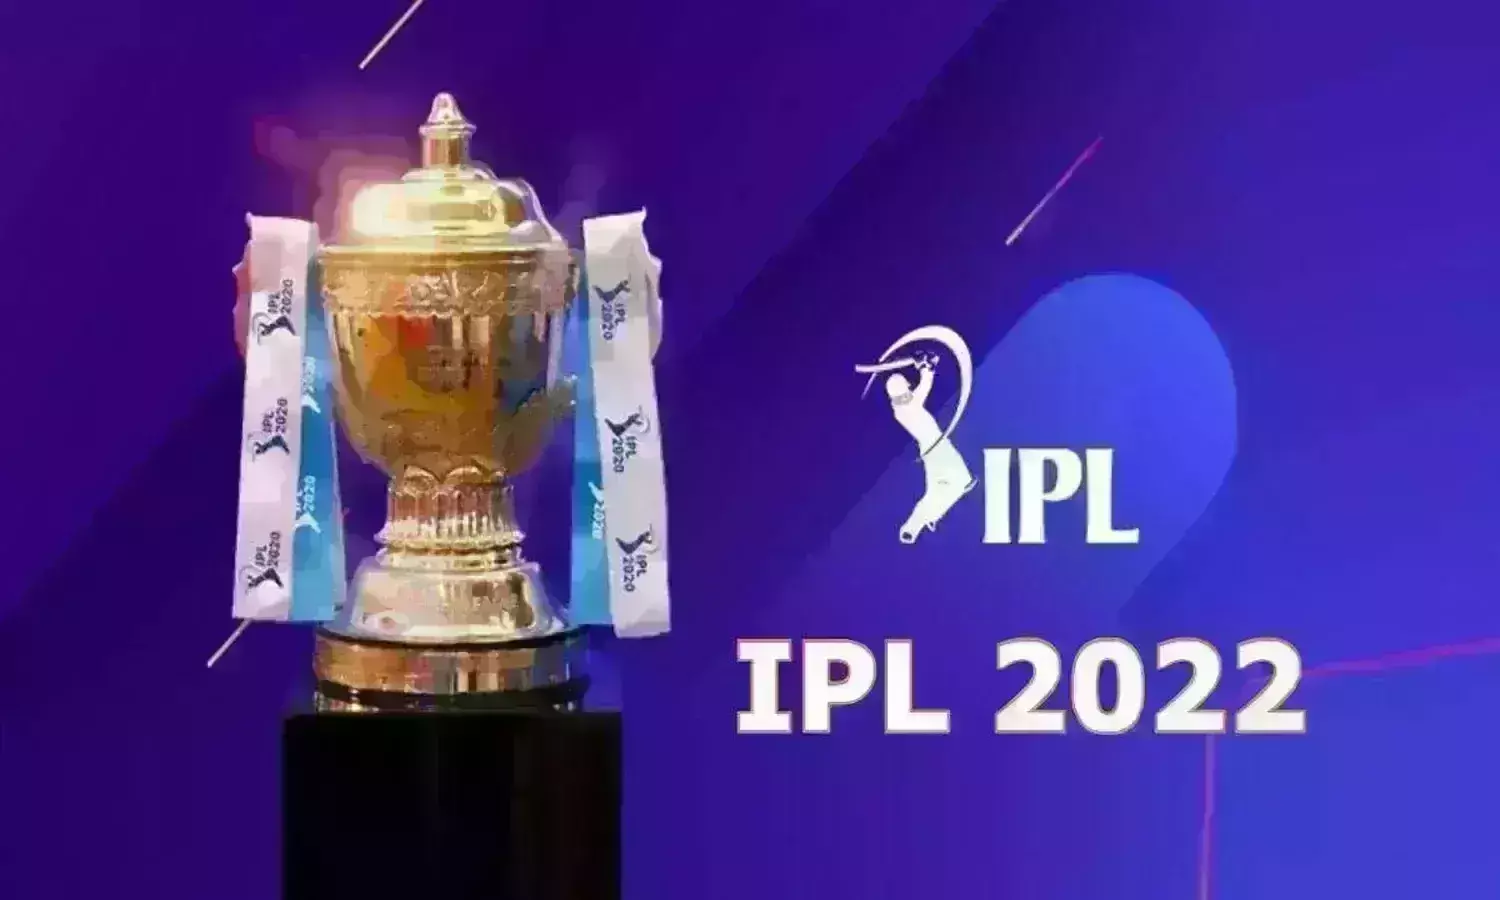 IPL 2022: लखनऊ सुपर जायंट्स की गंभीर रणनीति, देशी औऱ विदेशी खिलाड़ियों के मिश्रण से बनाई सबसे संतुलित टीम